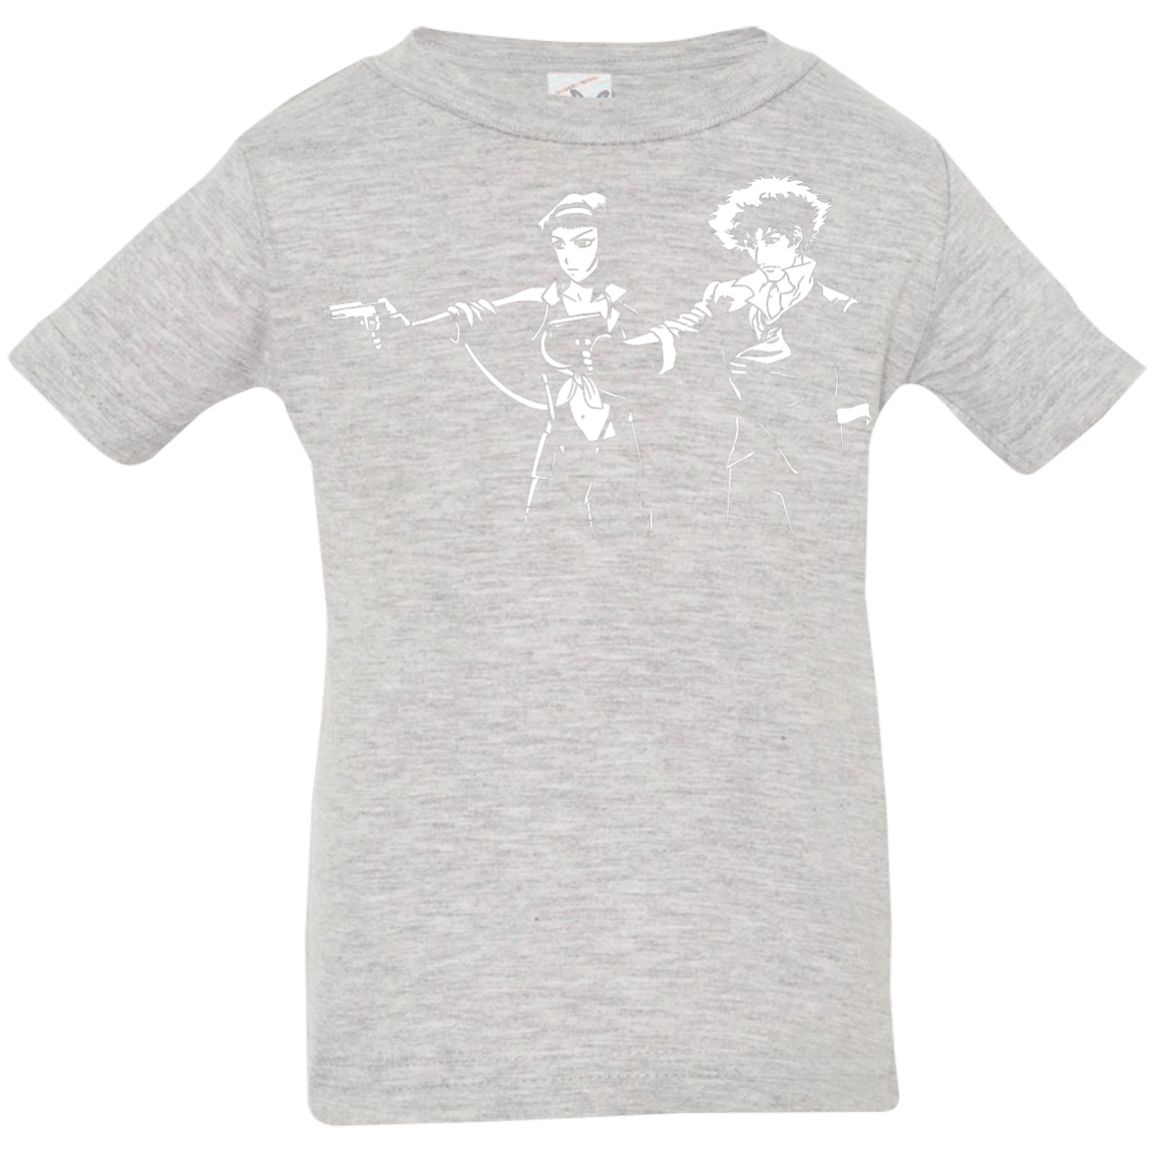 T-Shirts Heather Grey / 6 Months Cowboy Fiction Infant Premium T-Shirt